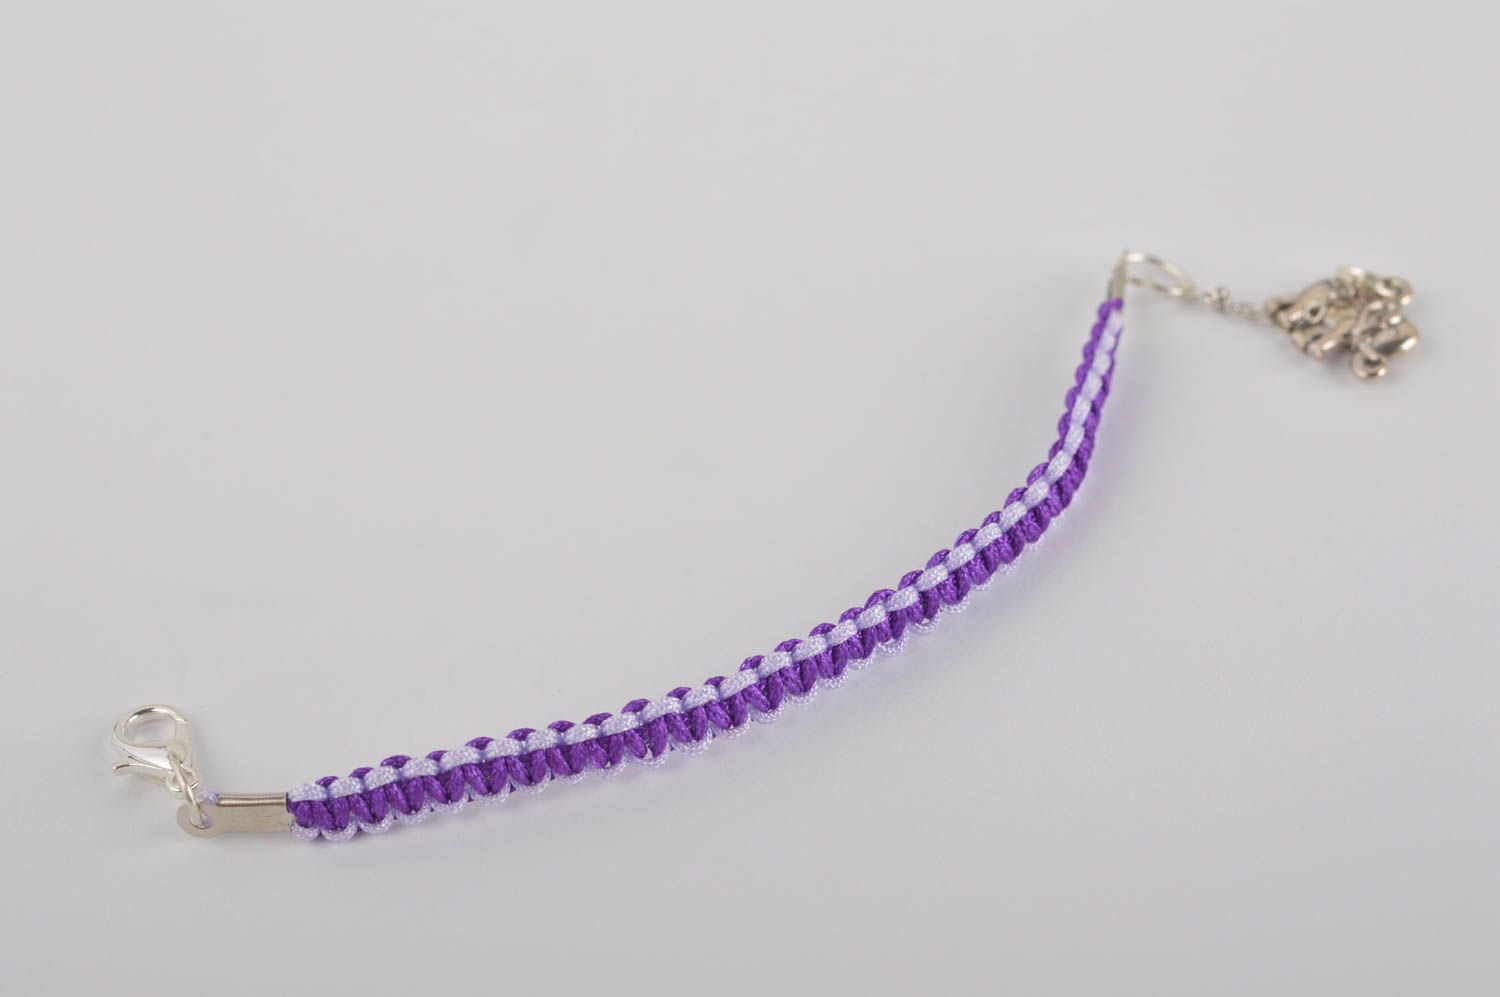 Handmade Textil Armband in Violett Designer Schmuck Accessoire für Mädchen foto 2